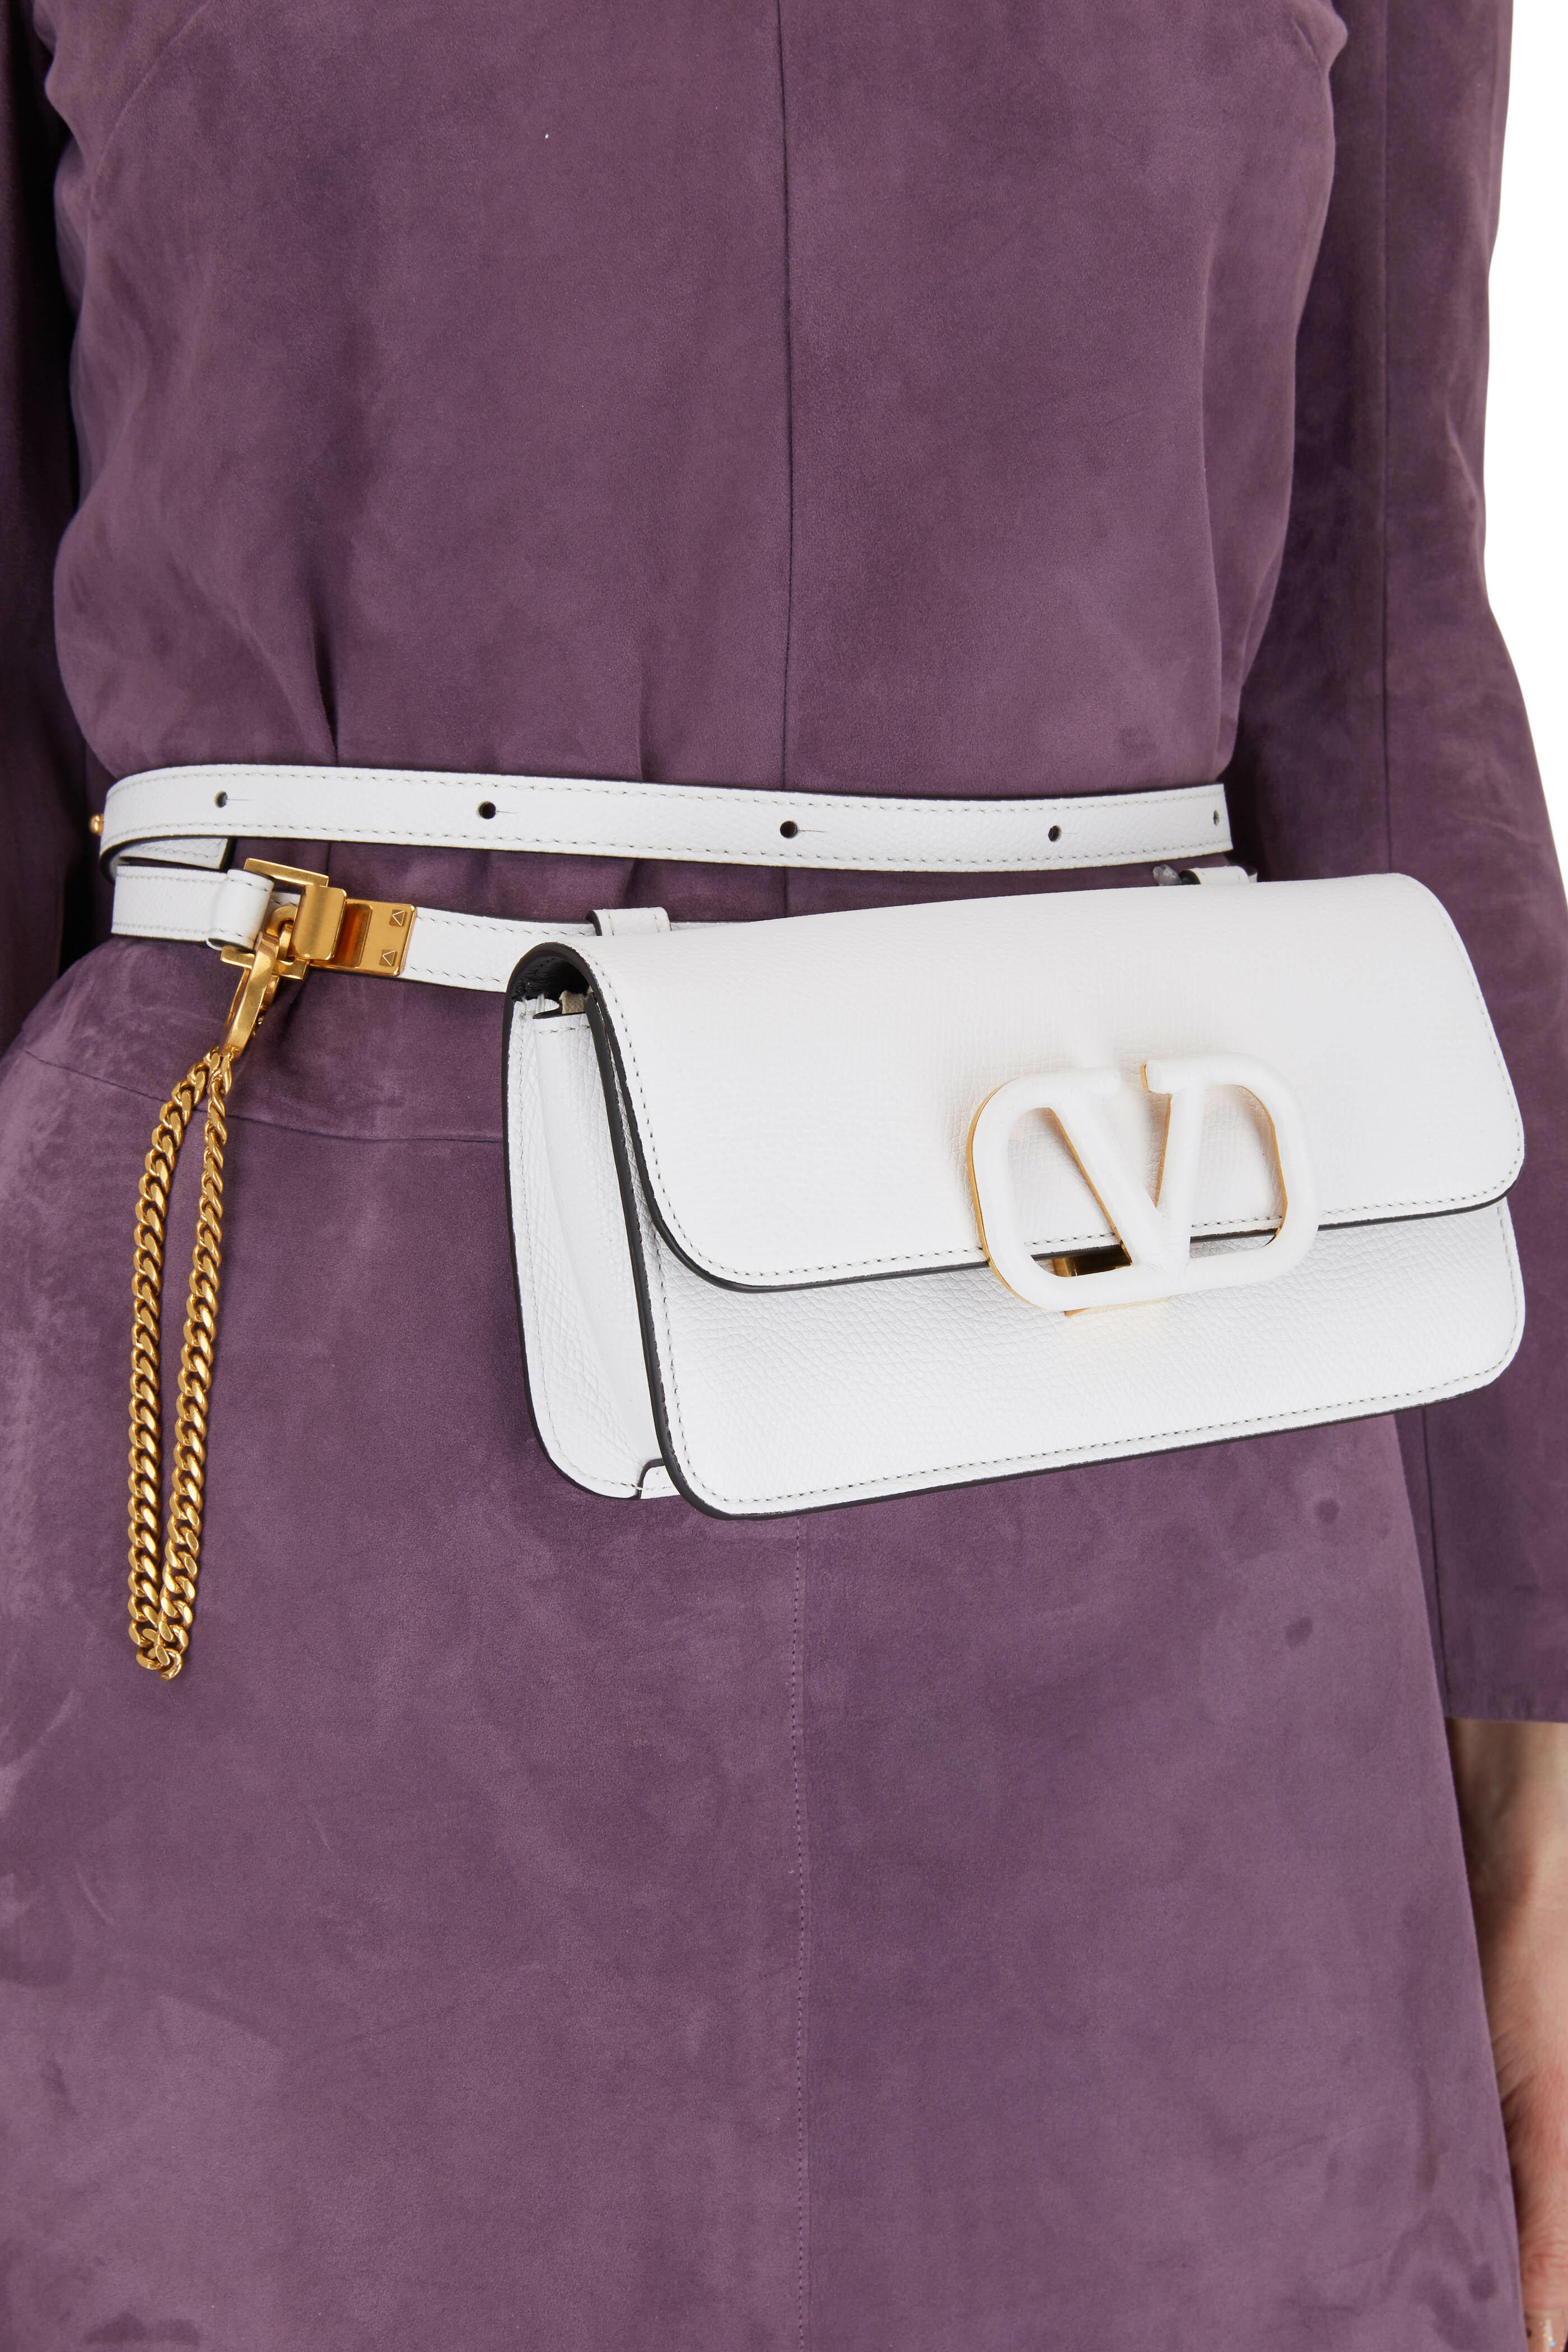 Vsling leather handbag Valentino Garavani White in Leather - 25462595